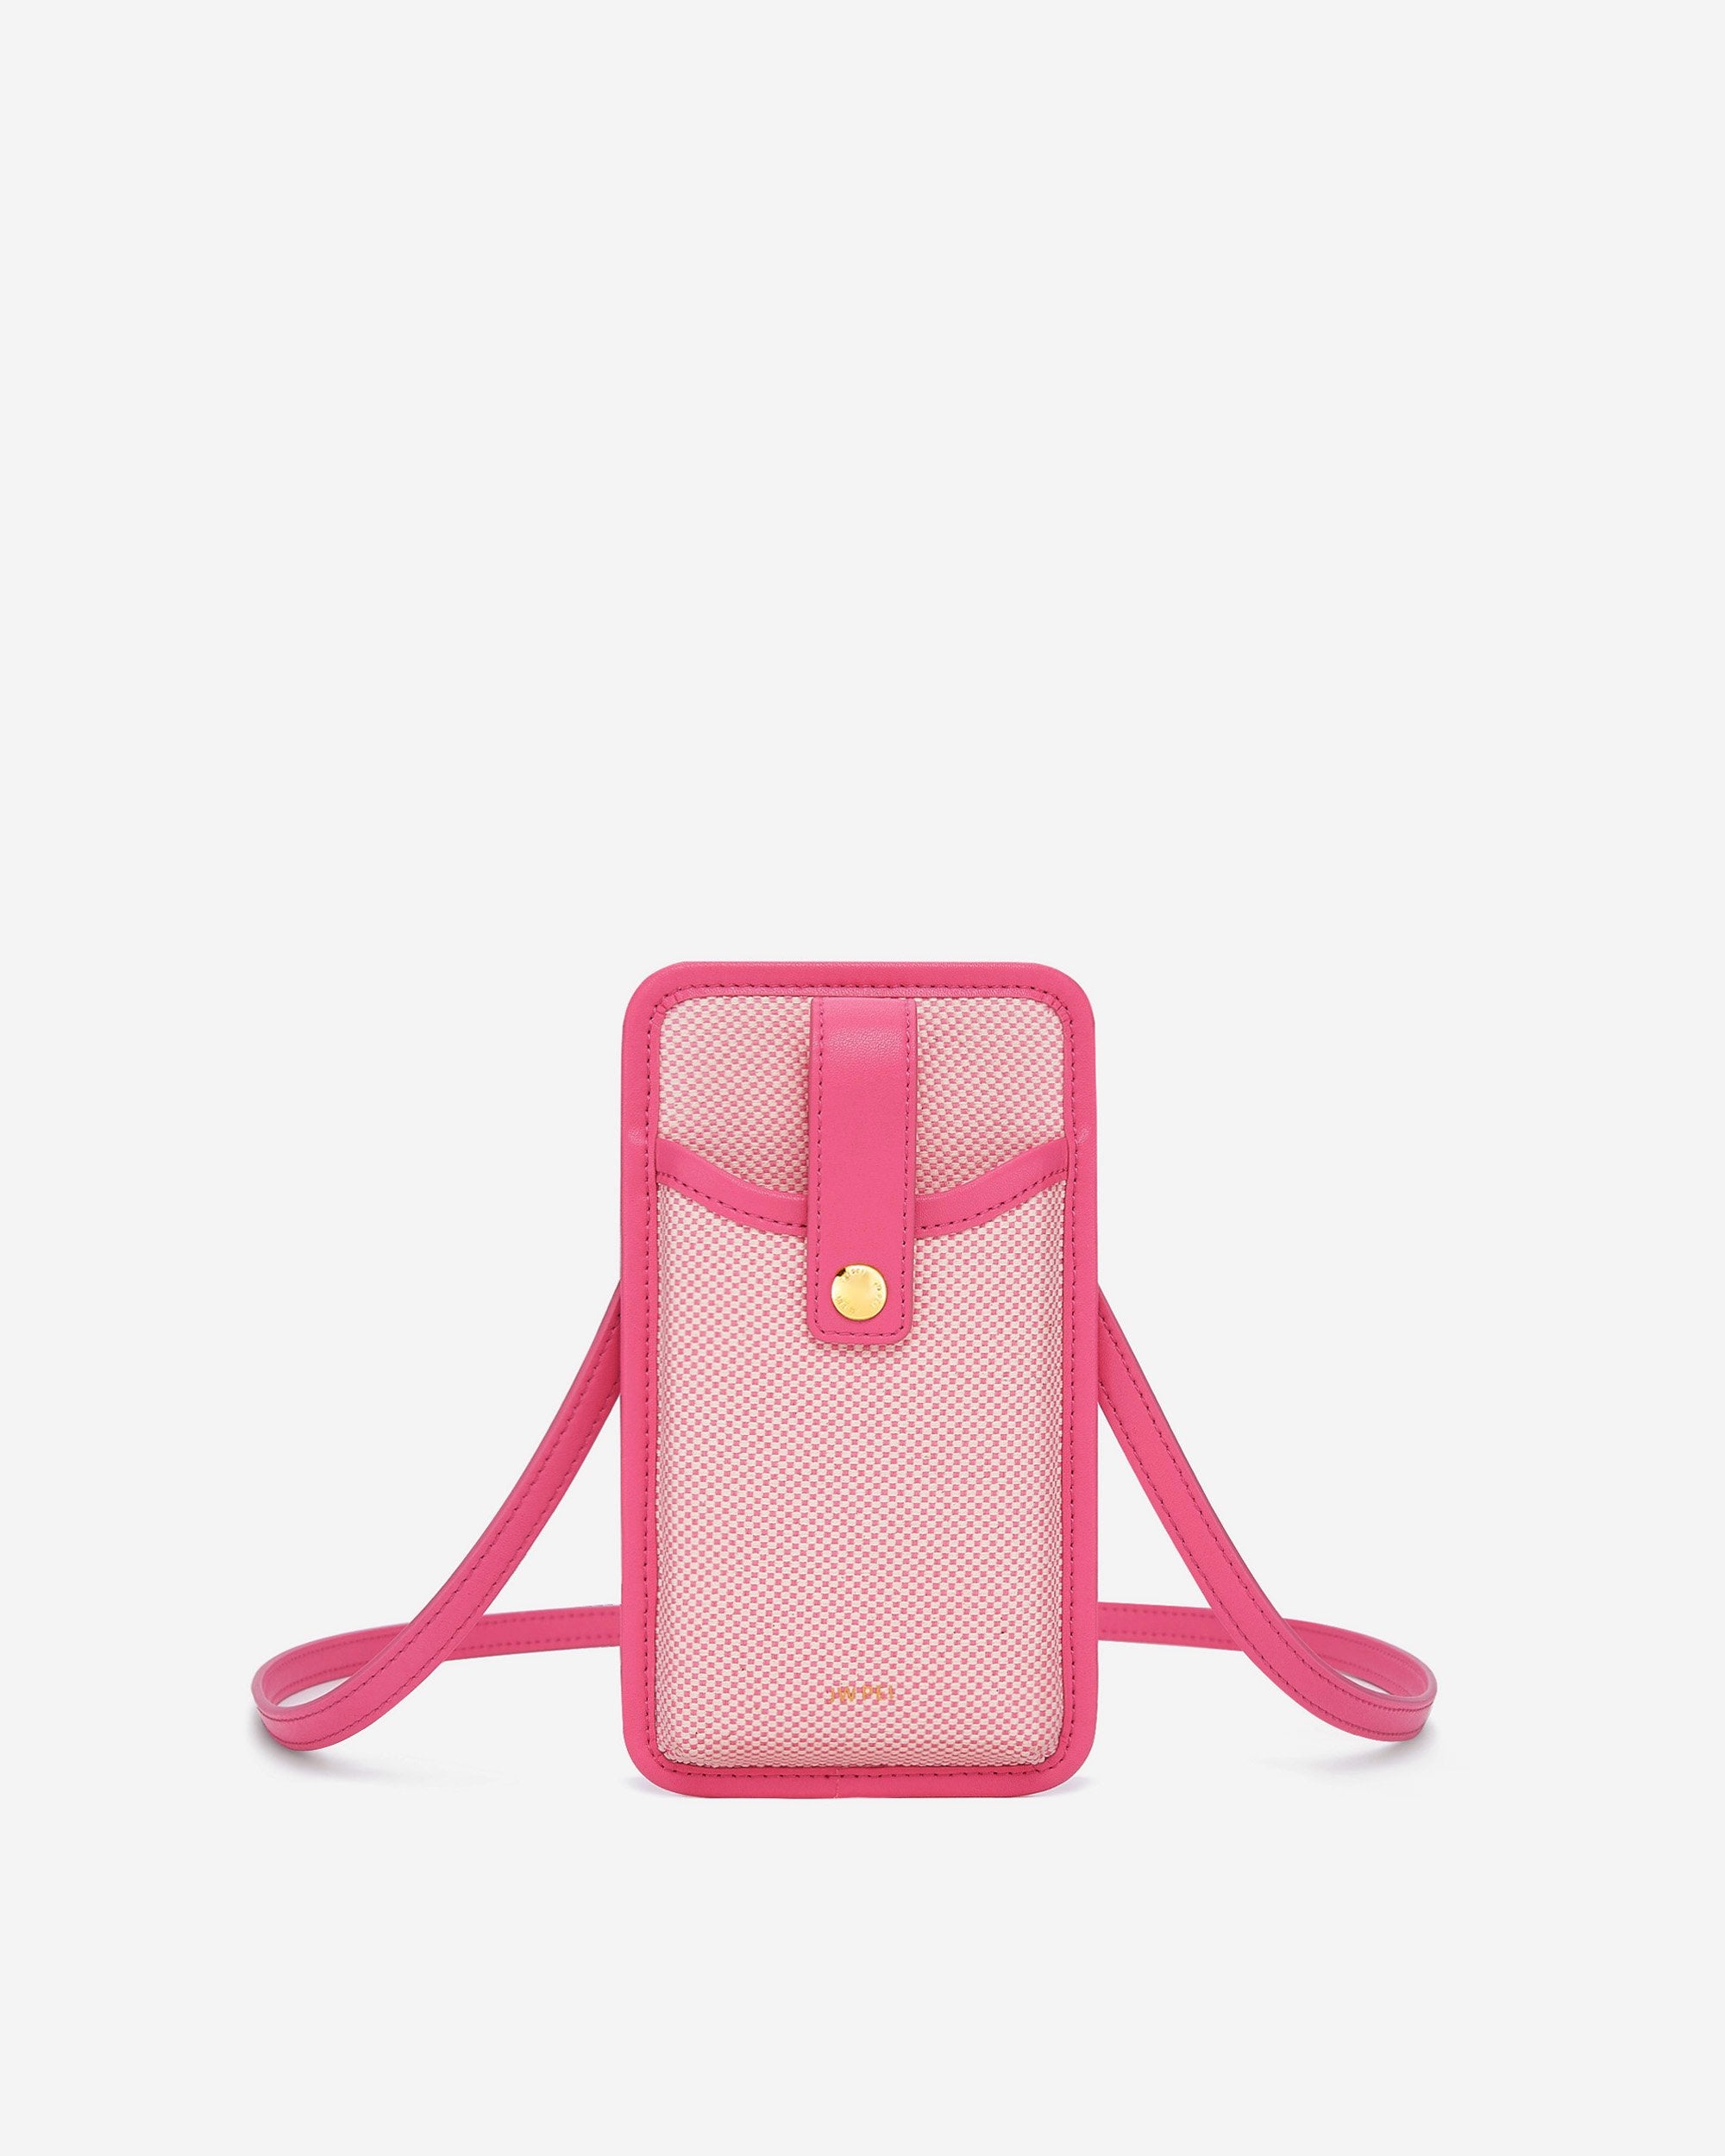 Aylin 帆布手機包  - 粉紅色